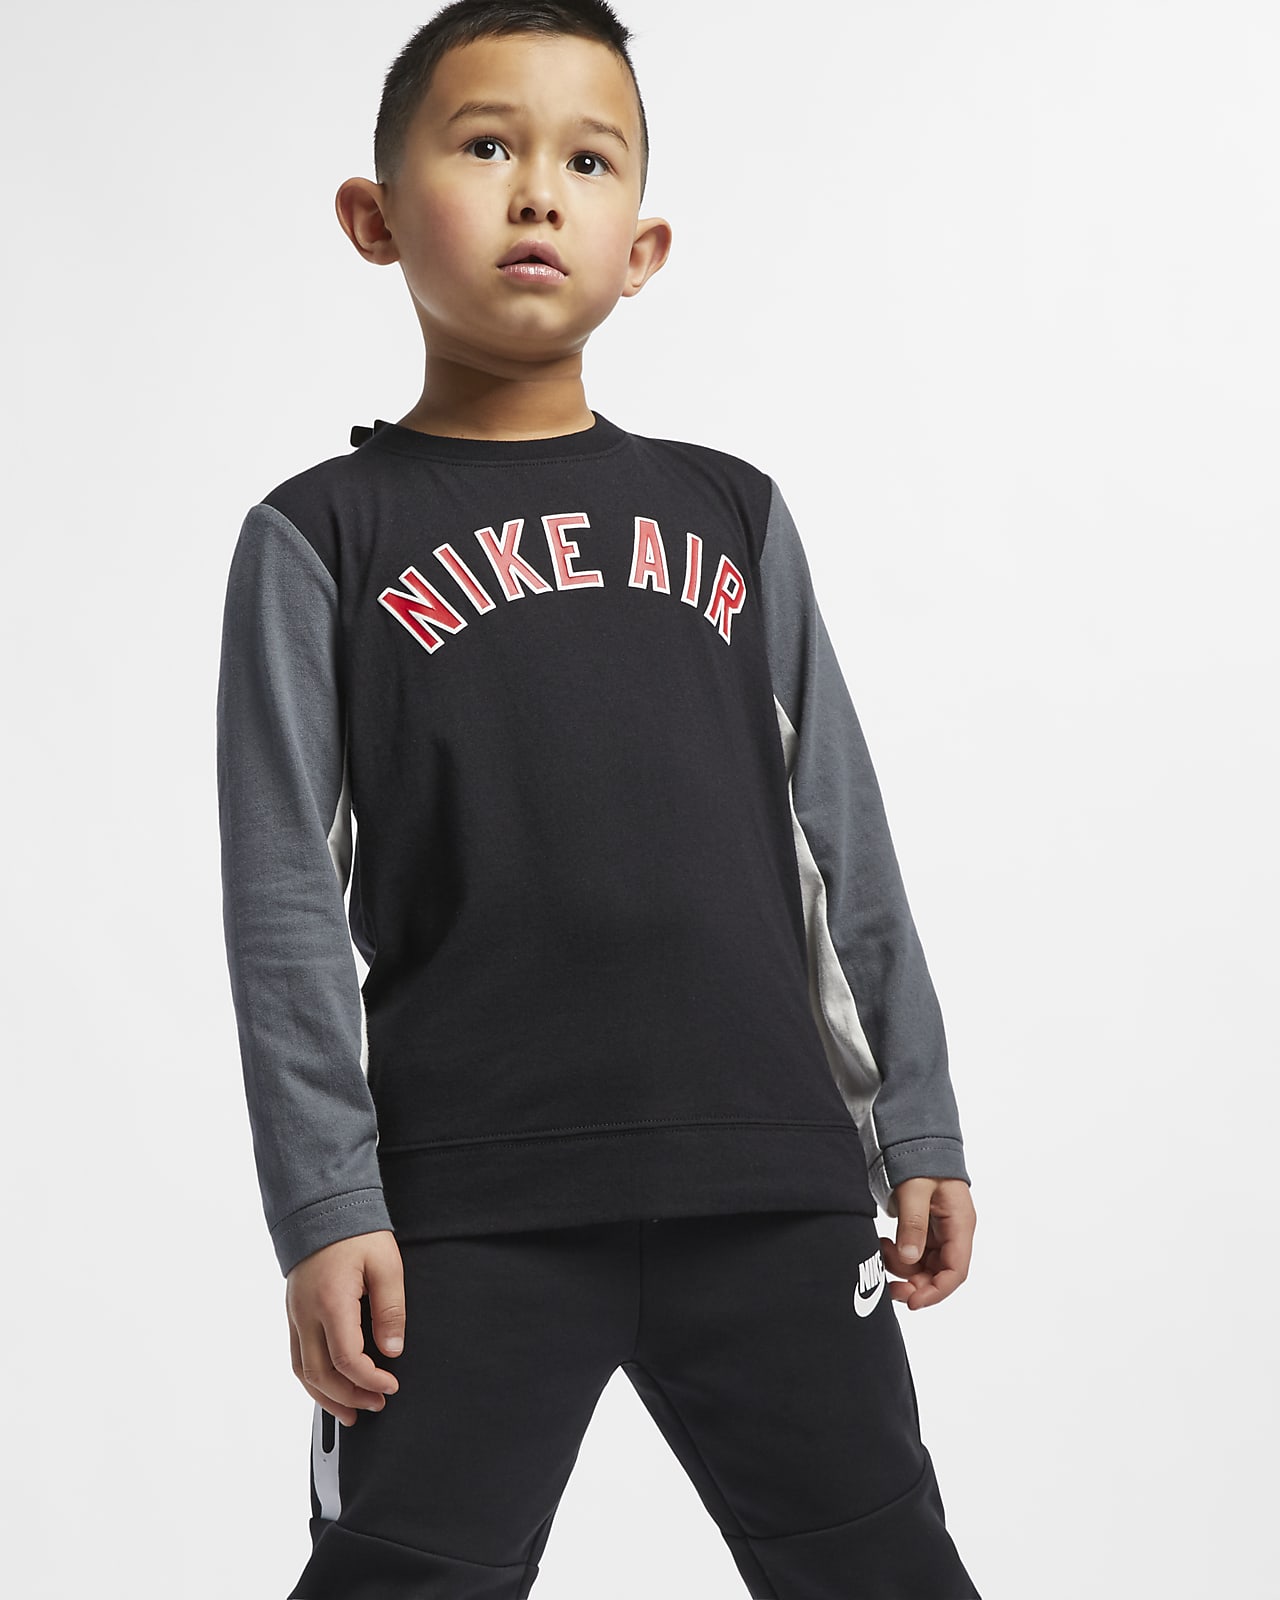 Nike Air 幼童长袖上衣